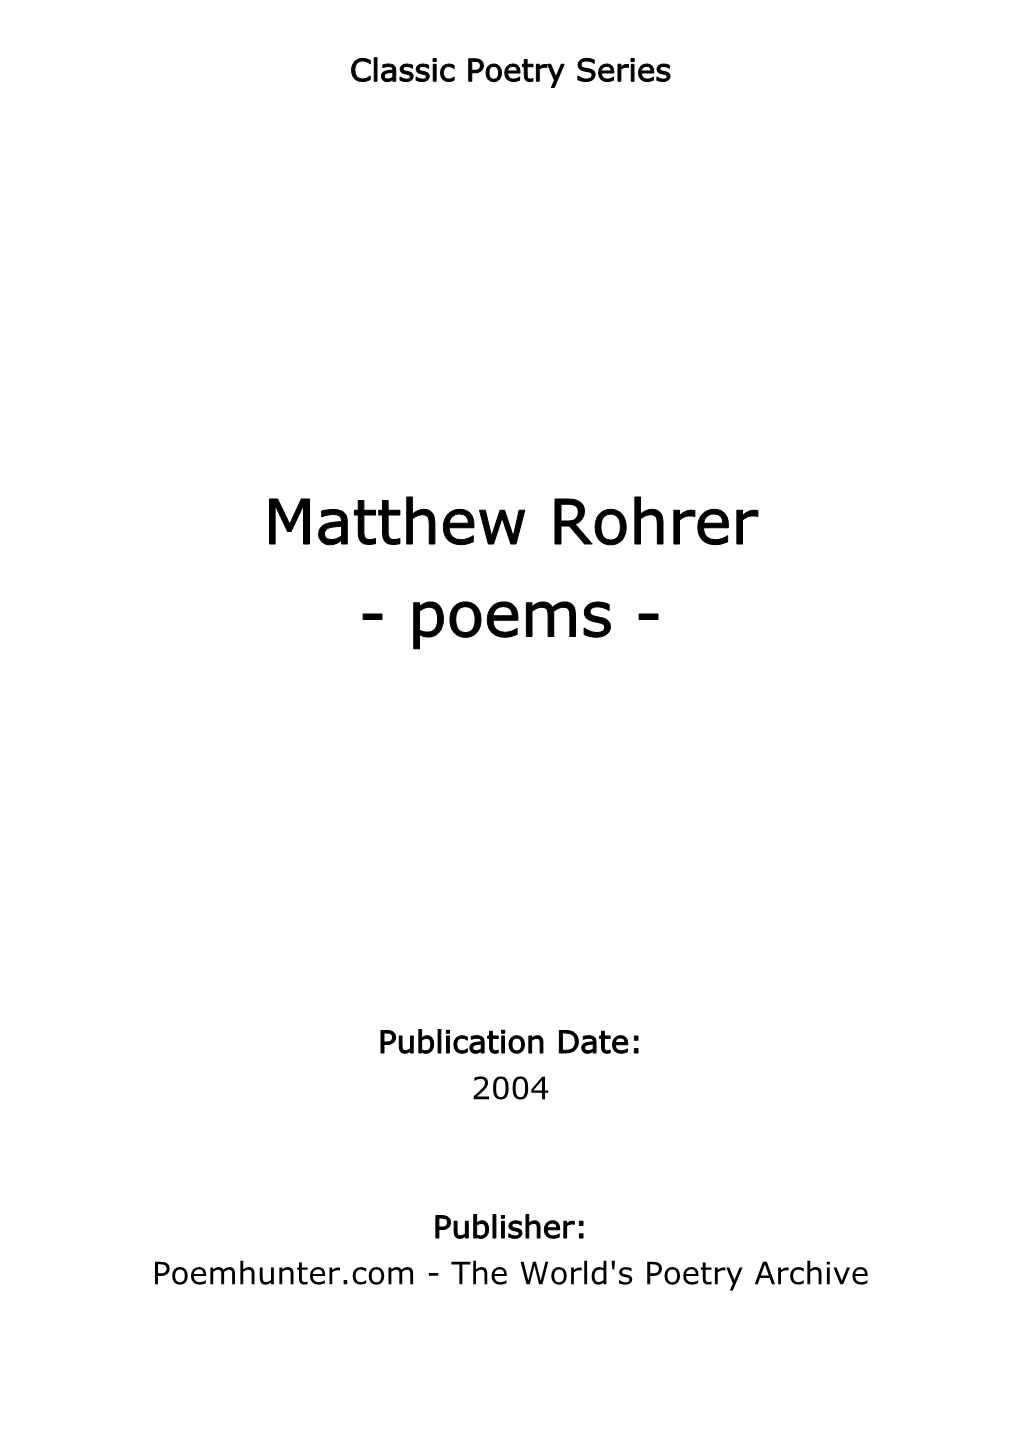 Matthew Rohrer - Poems